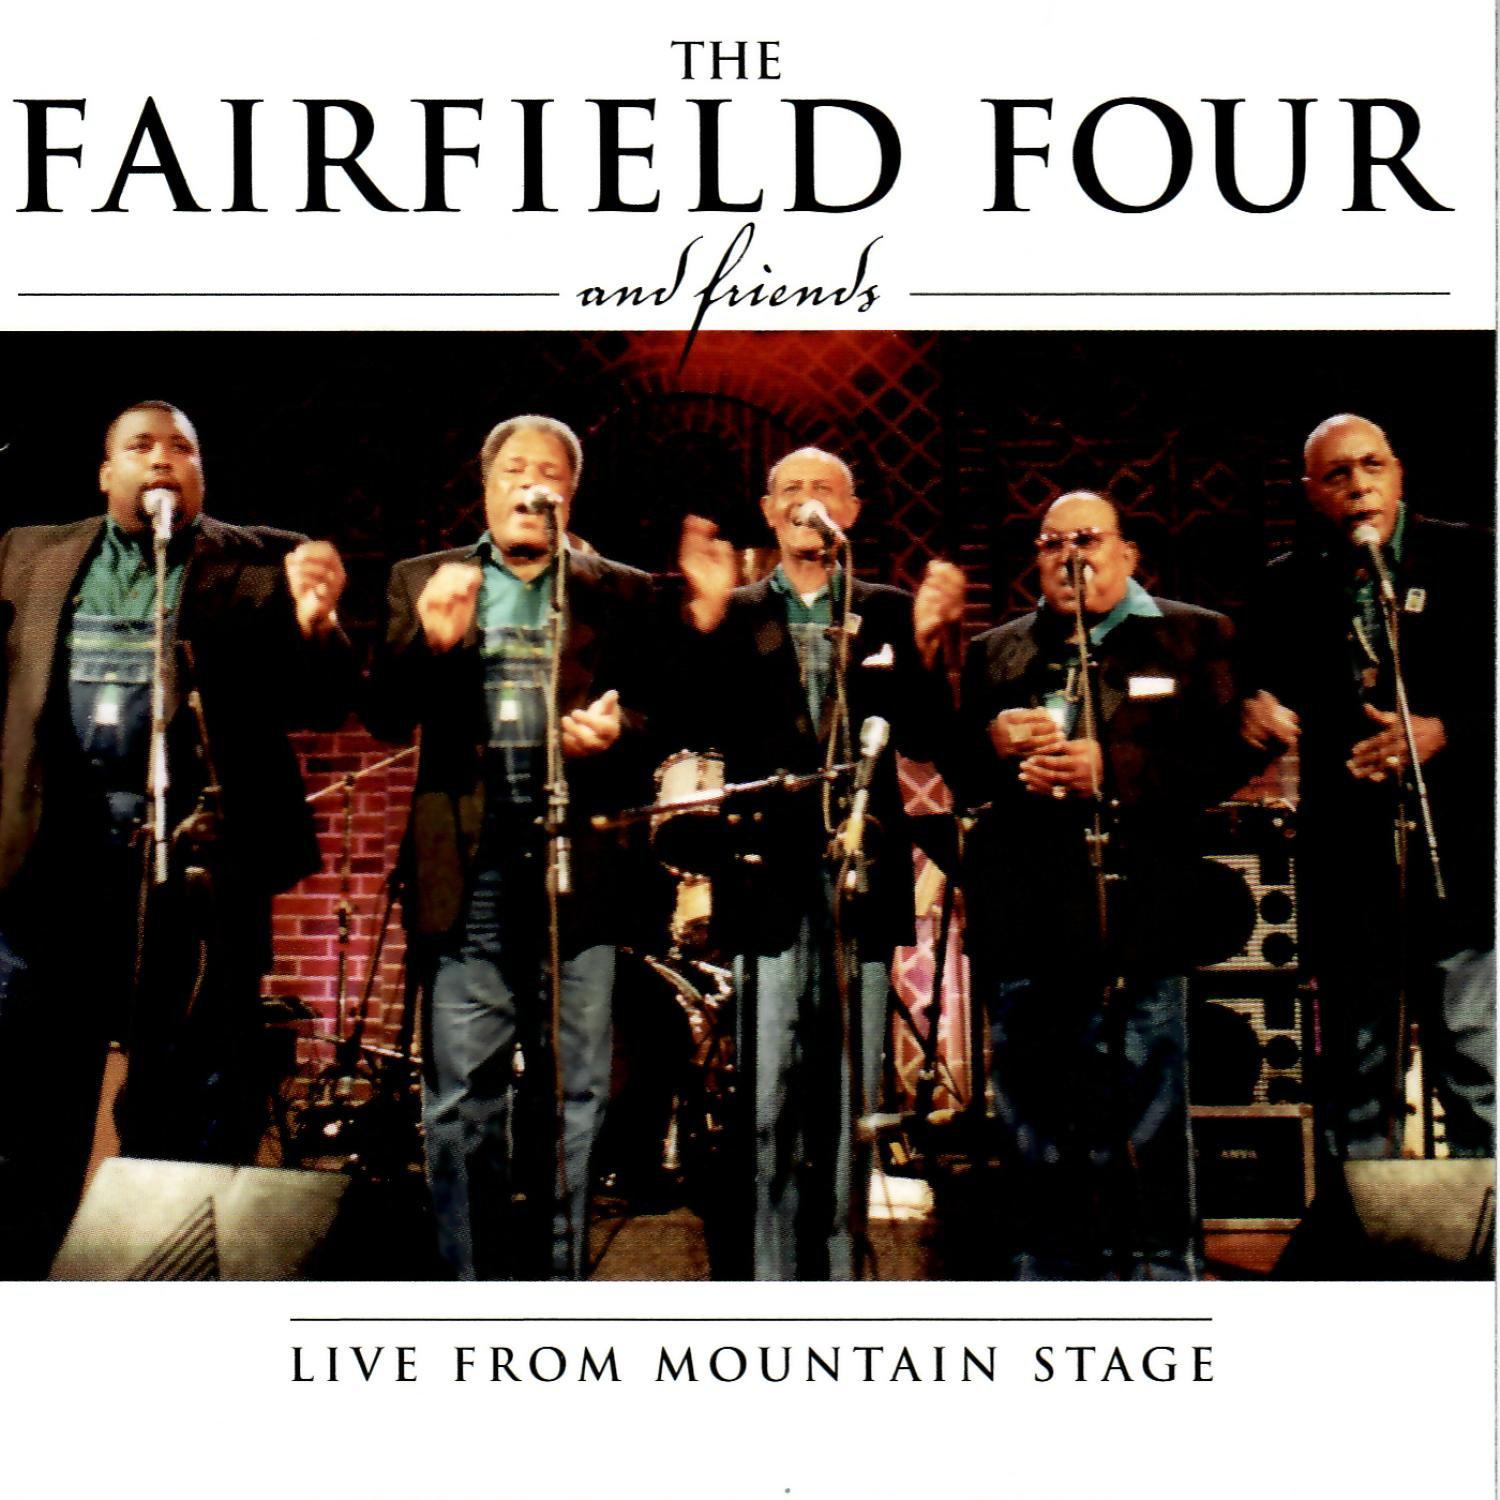 The Fairfield Four - Roll Jordan Roll